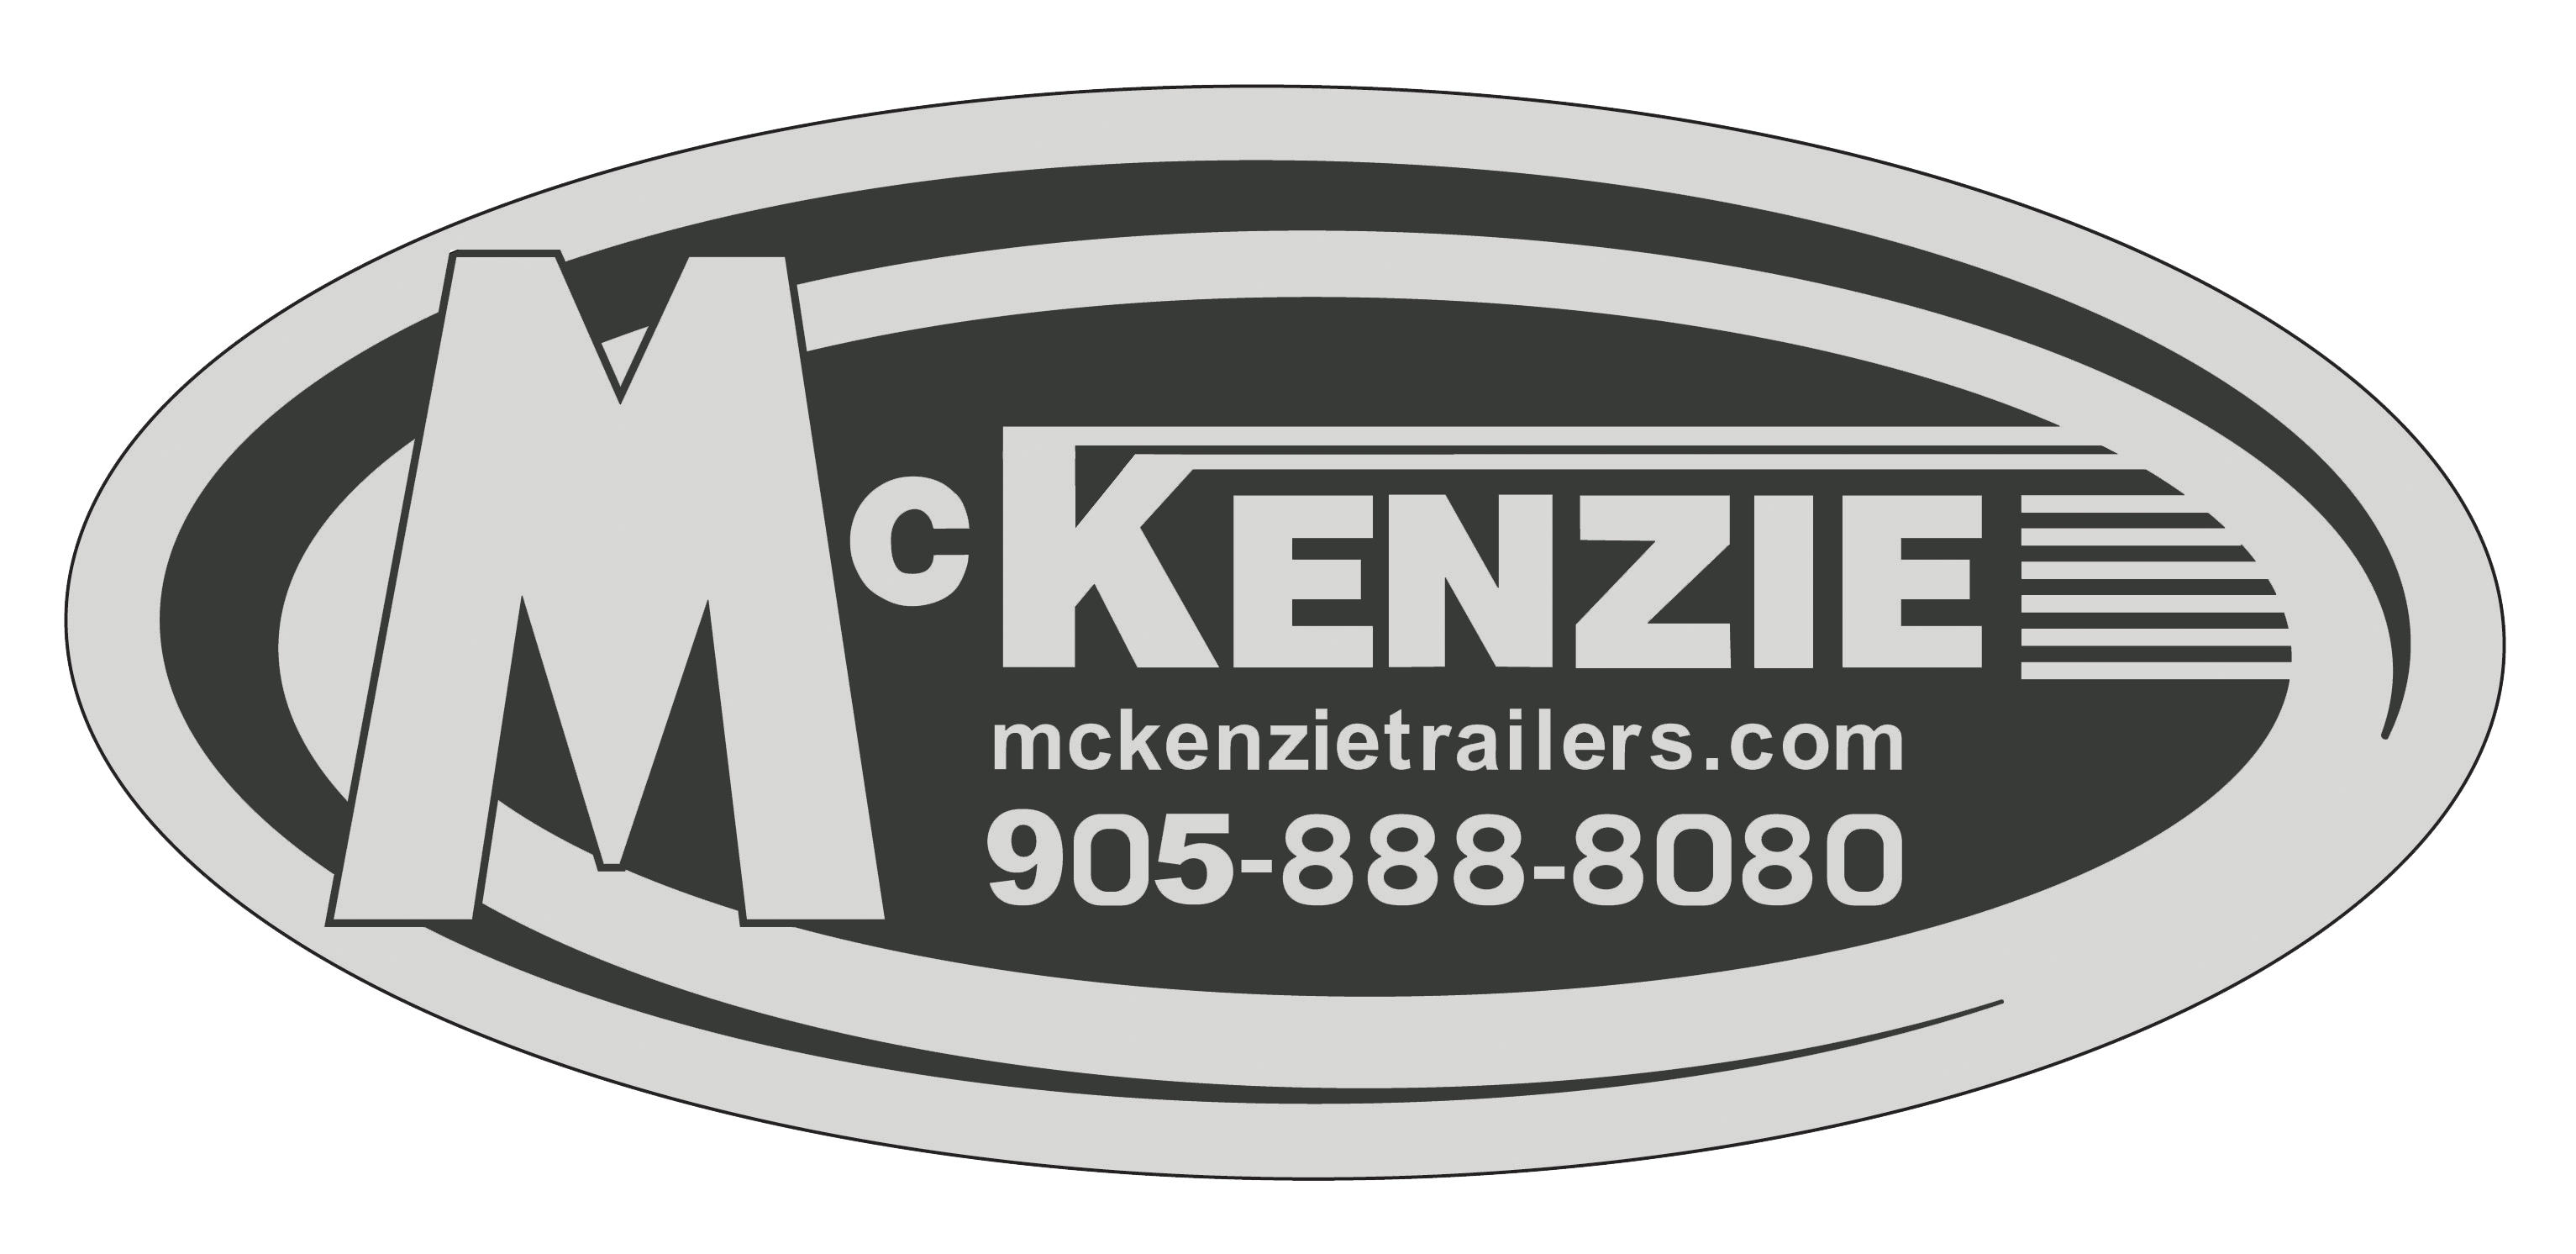 McKenzie Trailer logo